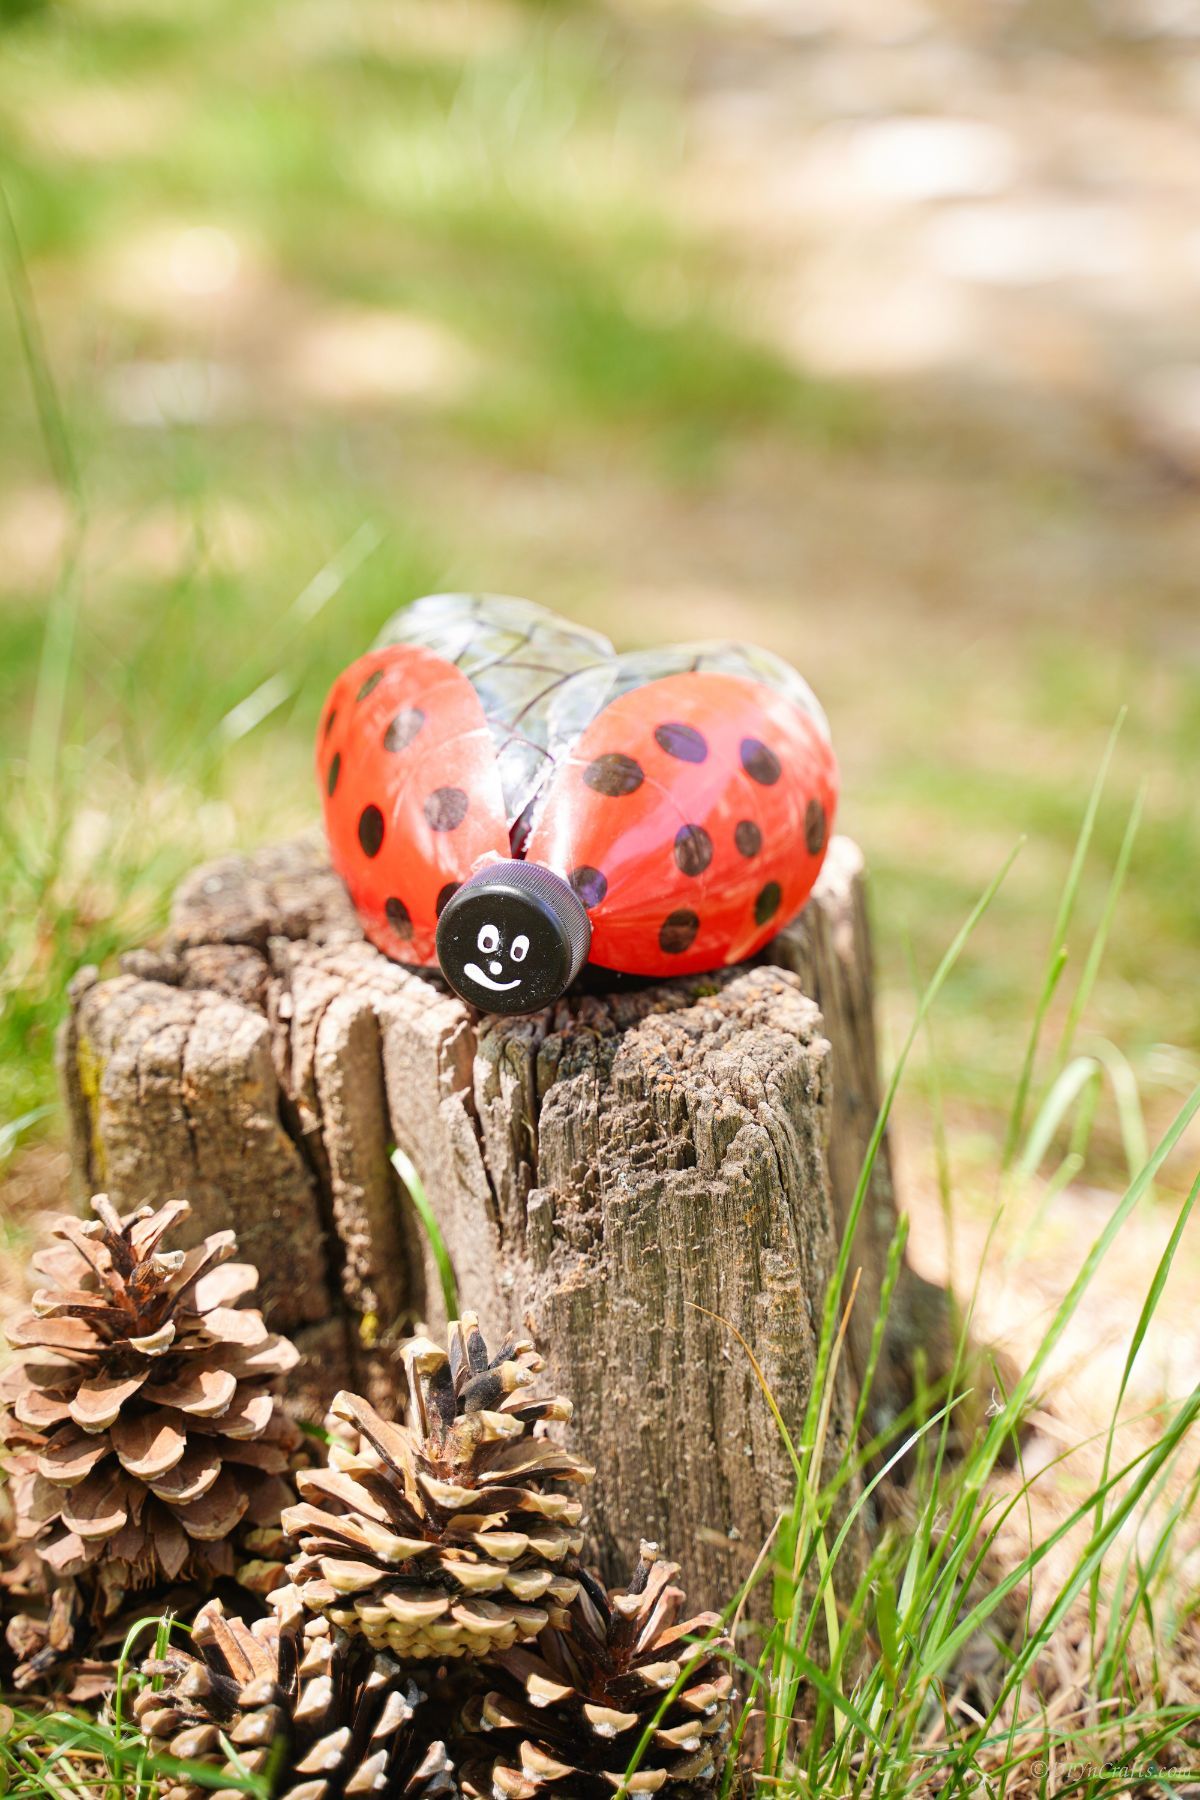 painted ladybug decoration on a tree stump